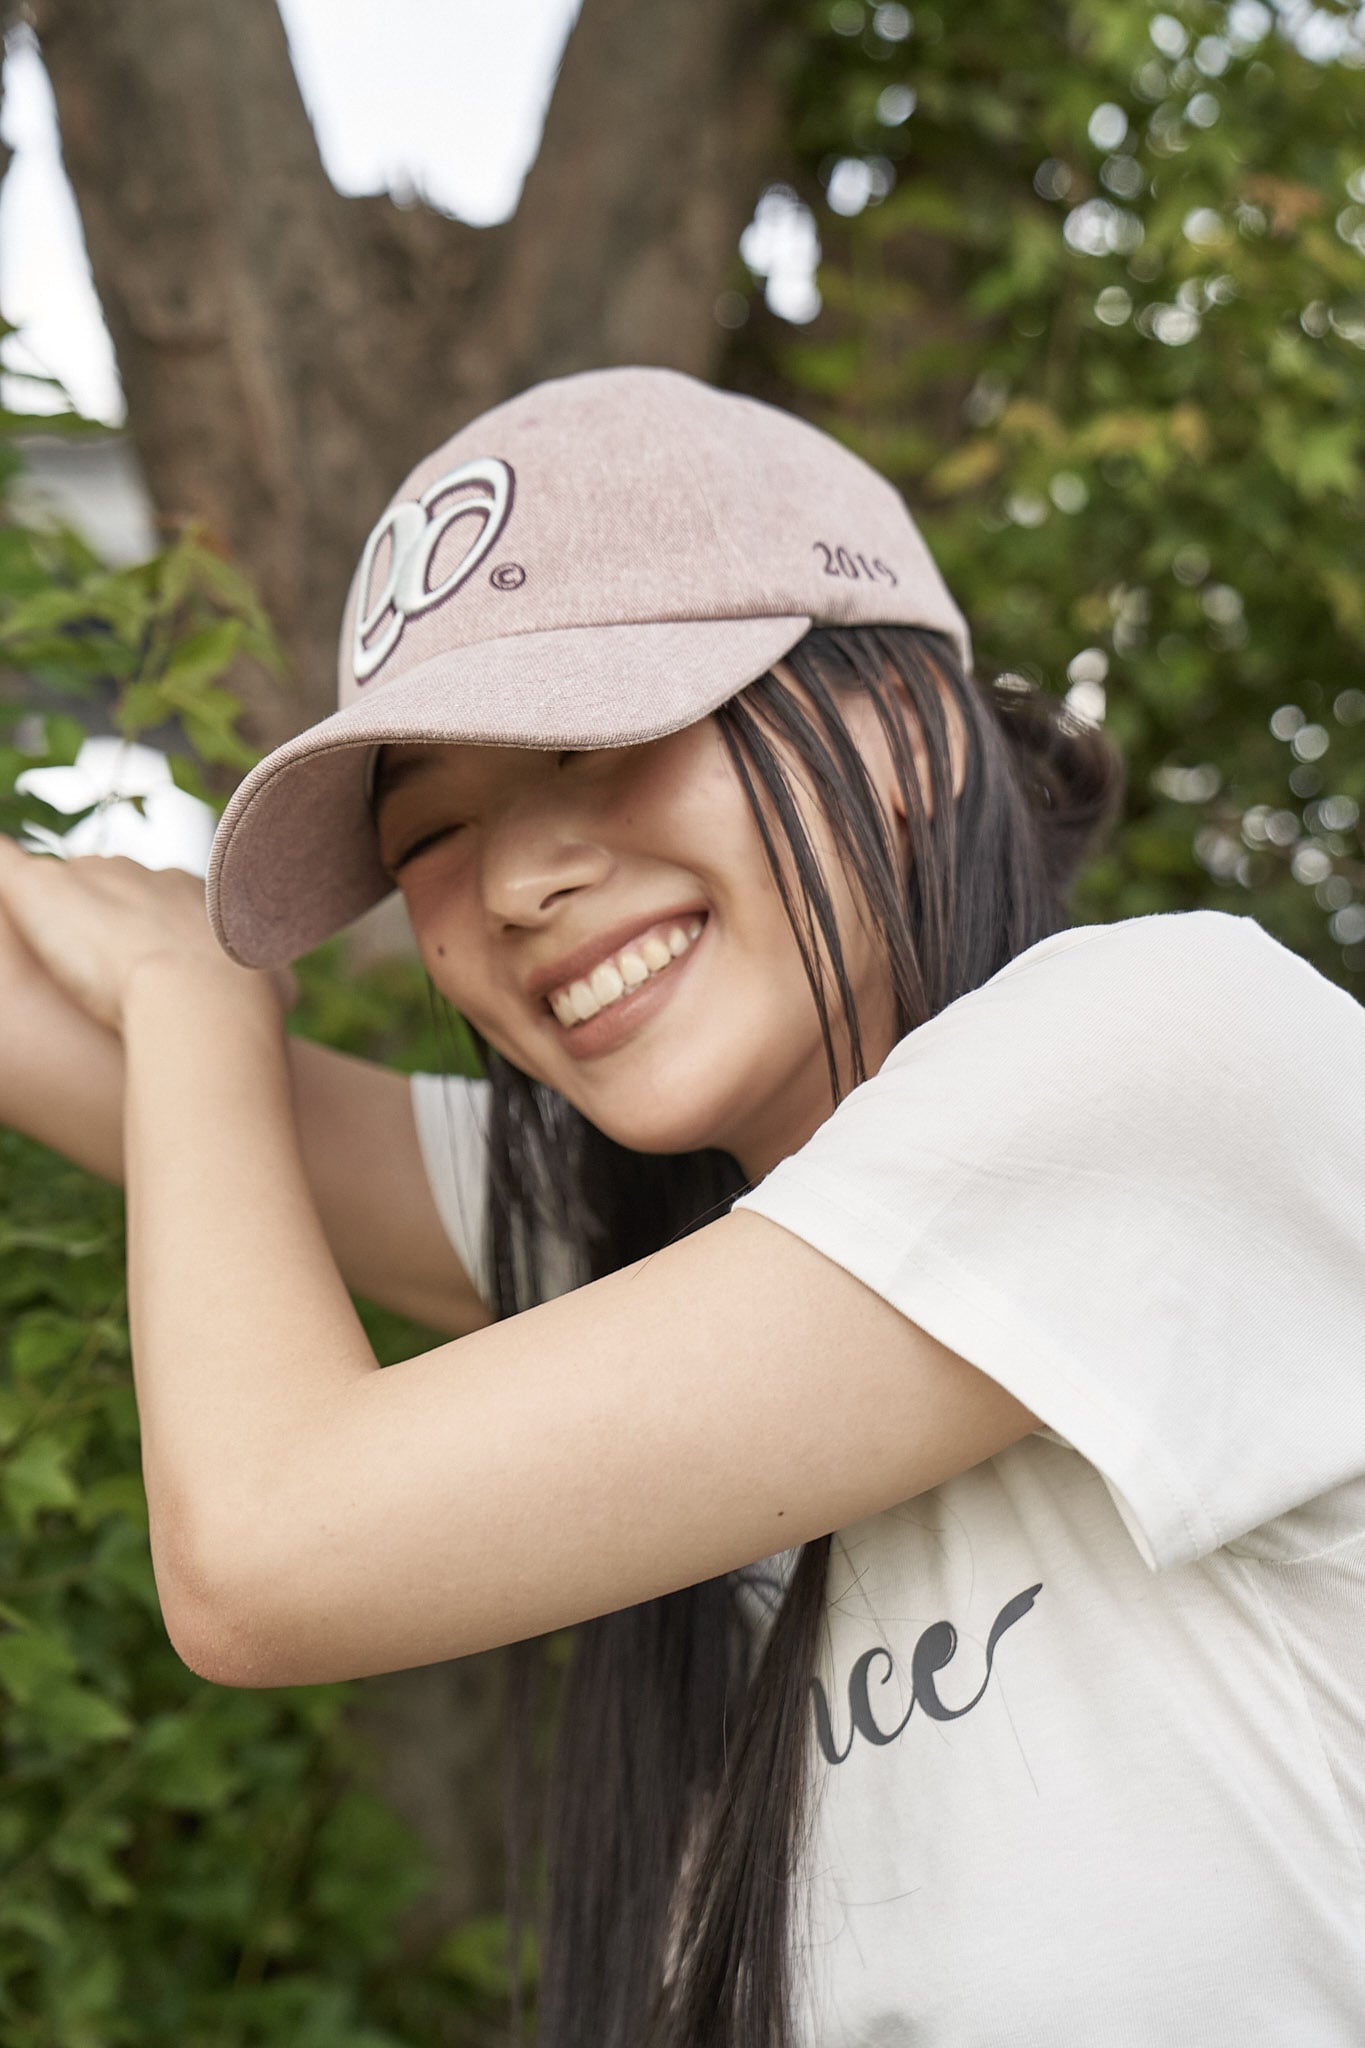 [as on] 99 SYMBOL BALL CAP 2色 新商品 韓国人気 男女共用 韓国ファッション カップルアイテム 贈り物 カップルアイテム - コクモト KOCUMOTO